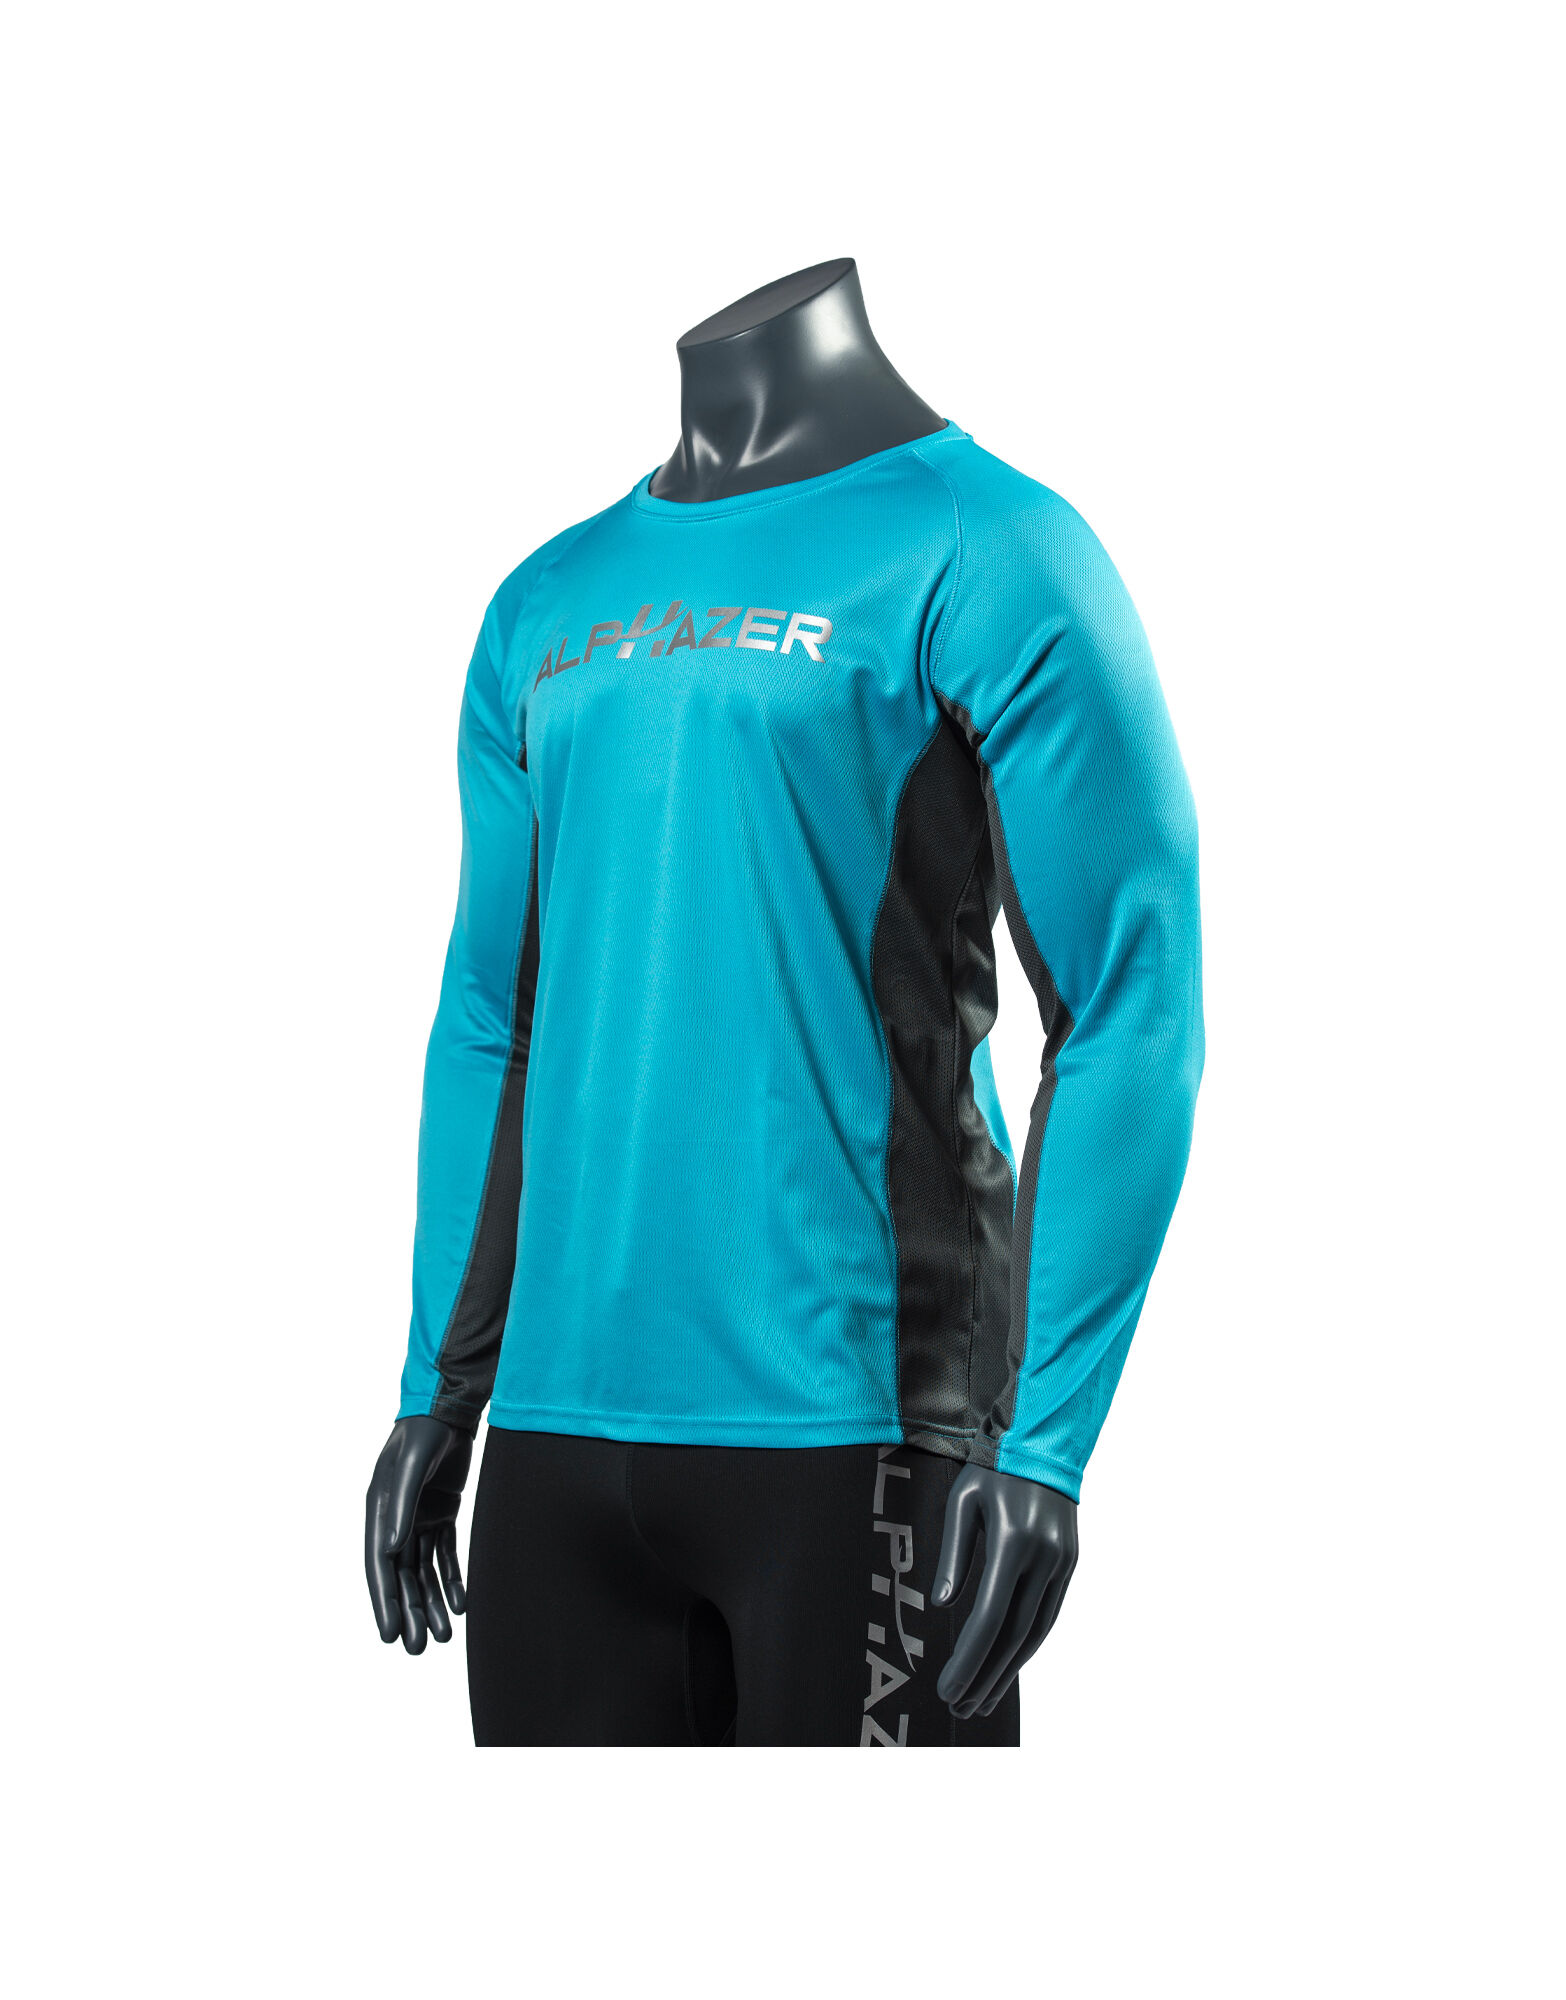 ALPHAZER OUTFIT Maglietta Tecnica Uomo Colore: Azzurro / Antracite Xl